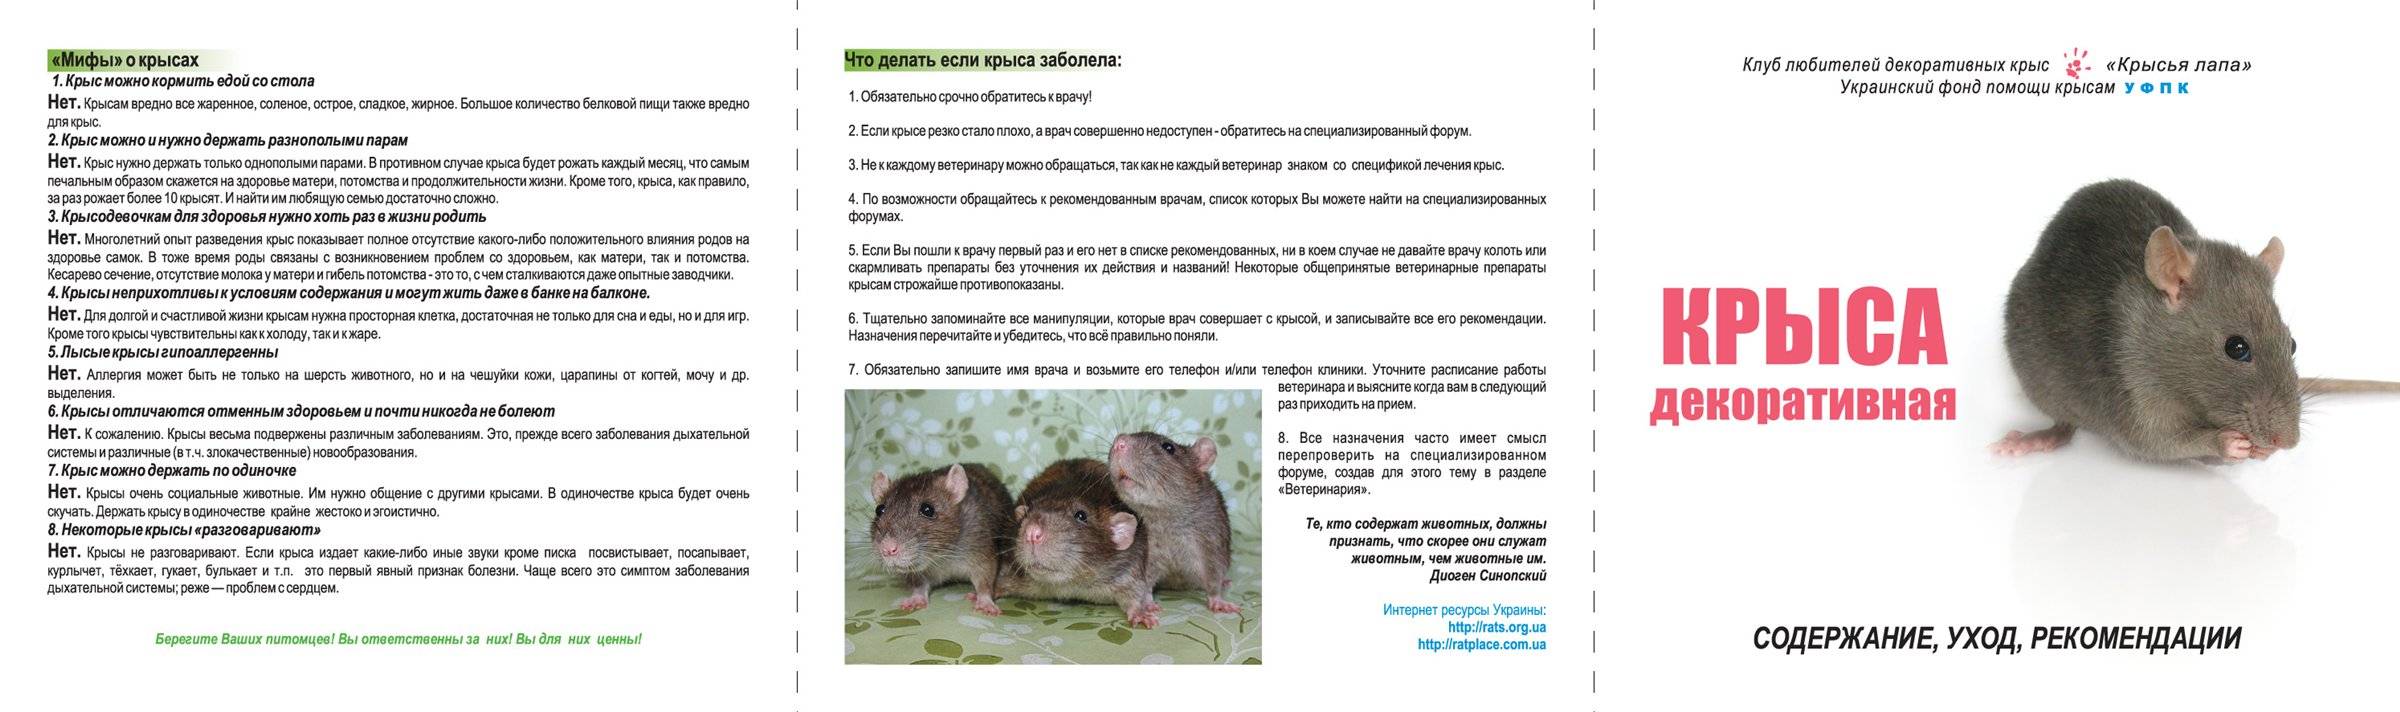 Что ест крыса в дикой природе и в домашних условиях?